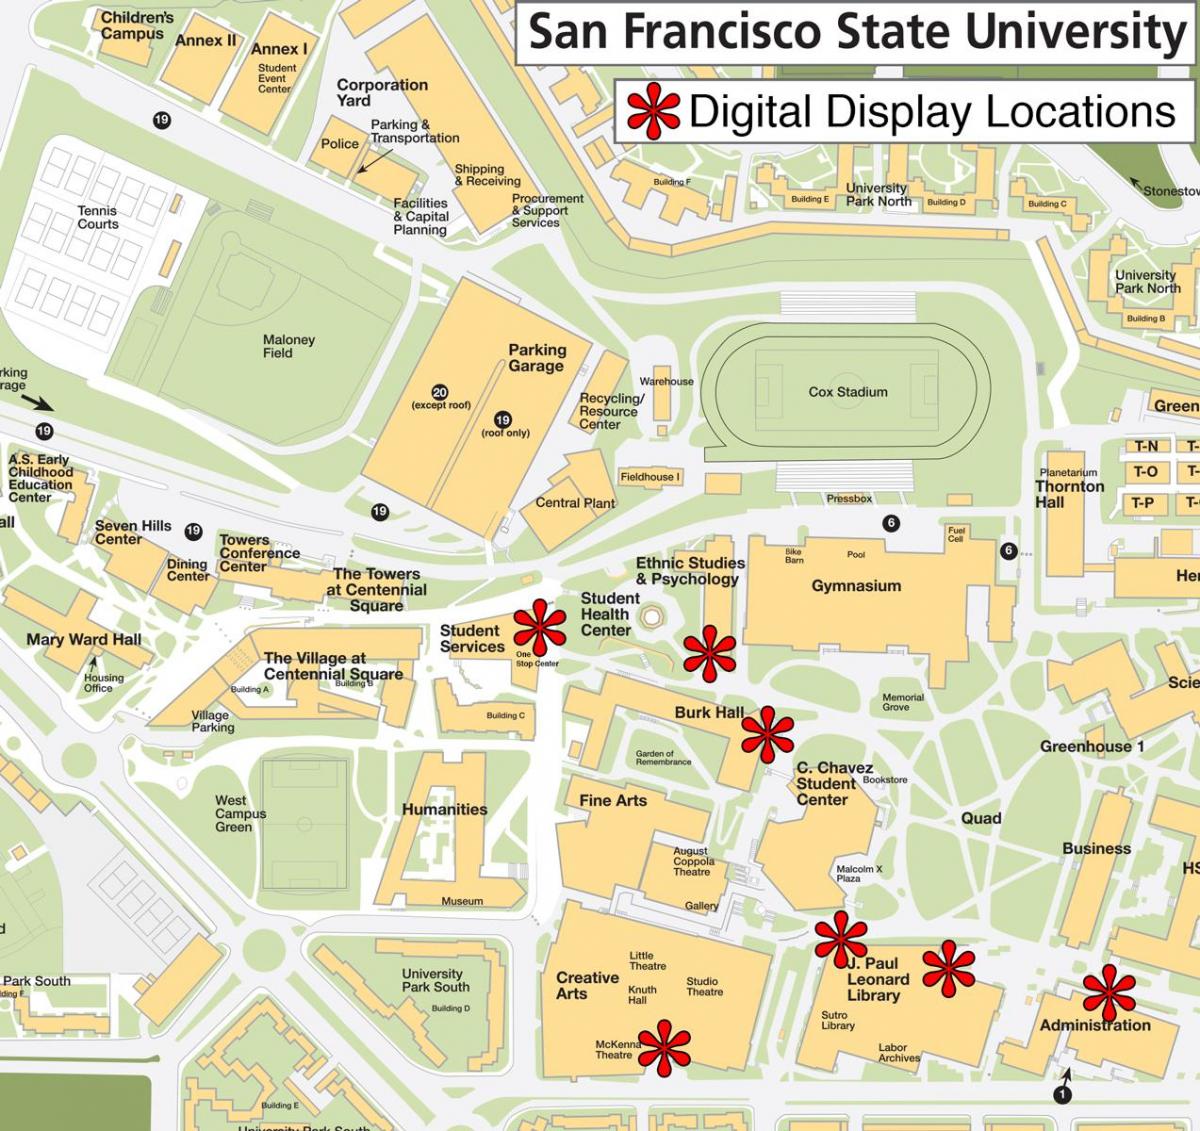 Սան Ֆրանցիսկոյի պետական համալսարան քարտեզի վրա